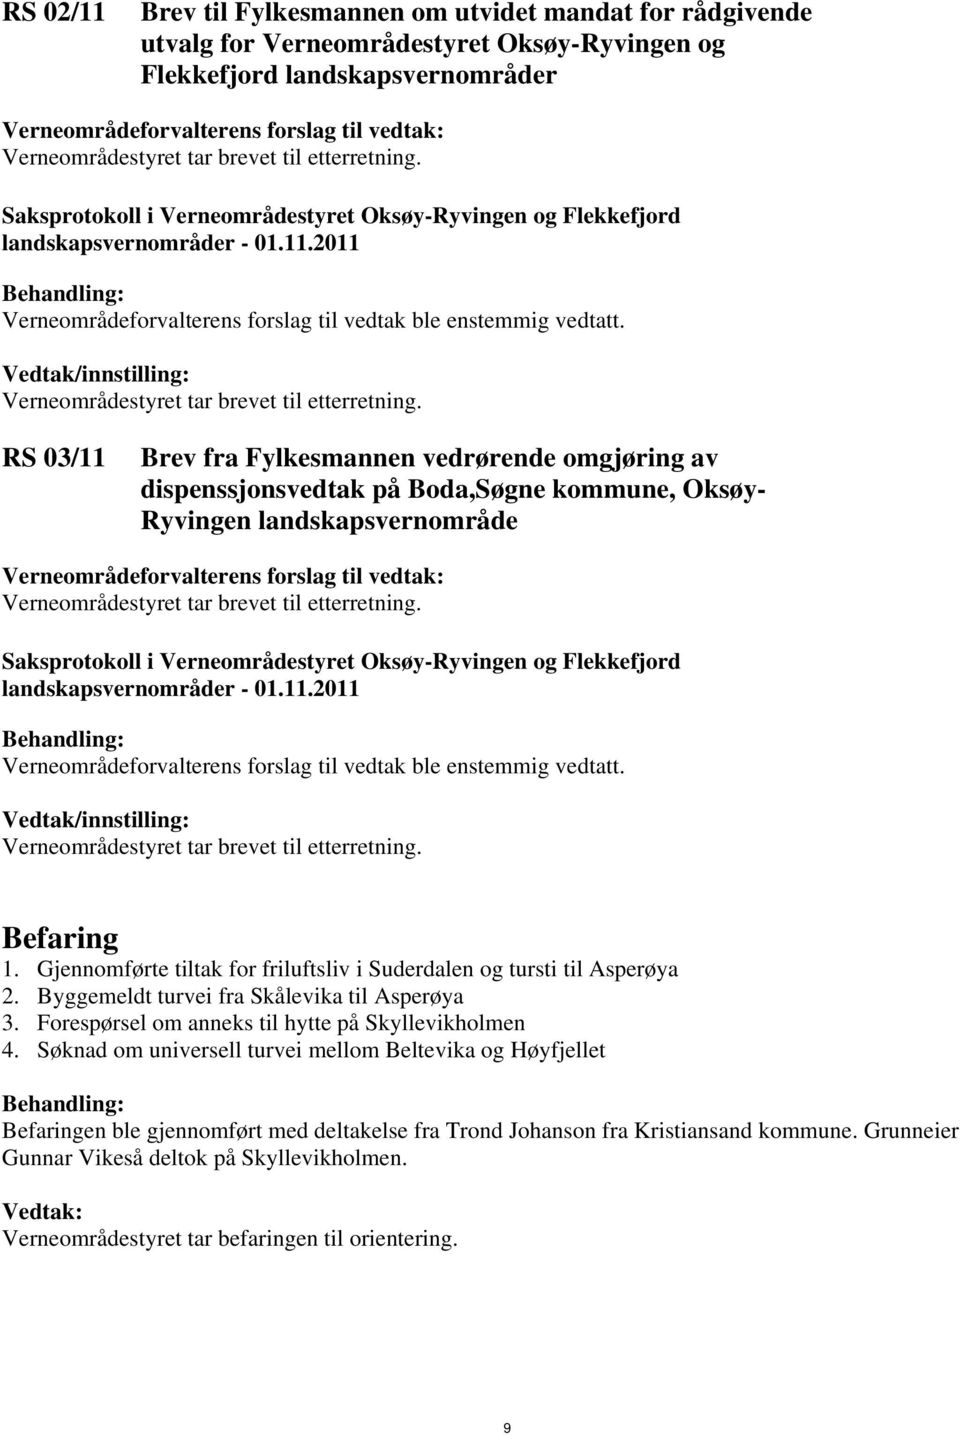 Gjennomførte tiltak for friluftsliv i Suderdalen og tursti til Asperøya 2. Byggemeldt turvei fra Skålevika til Asperøya 3. Forespørsel om anneks til hytte på Skyllevikholmen 4.